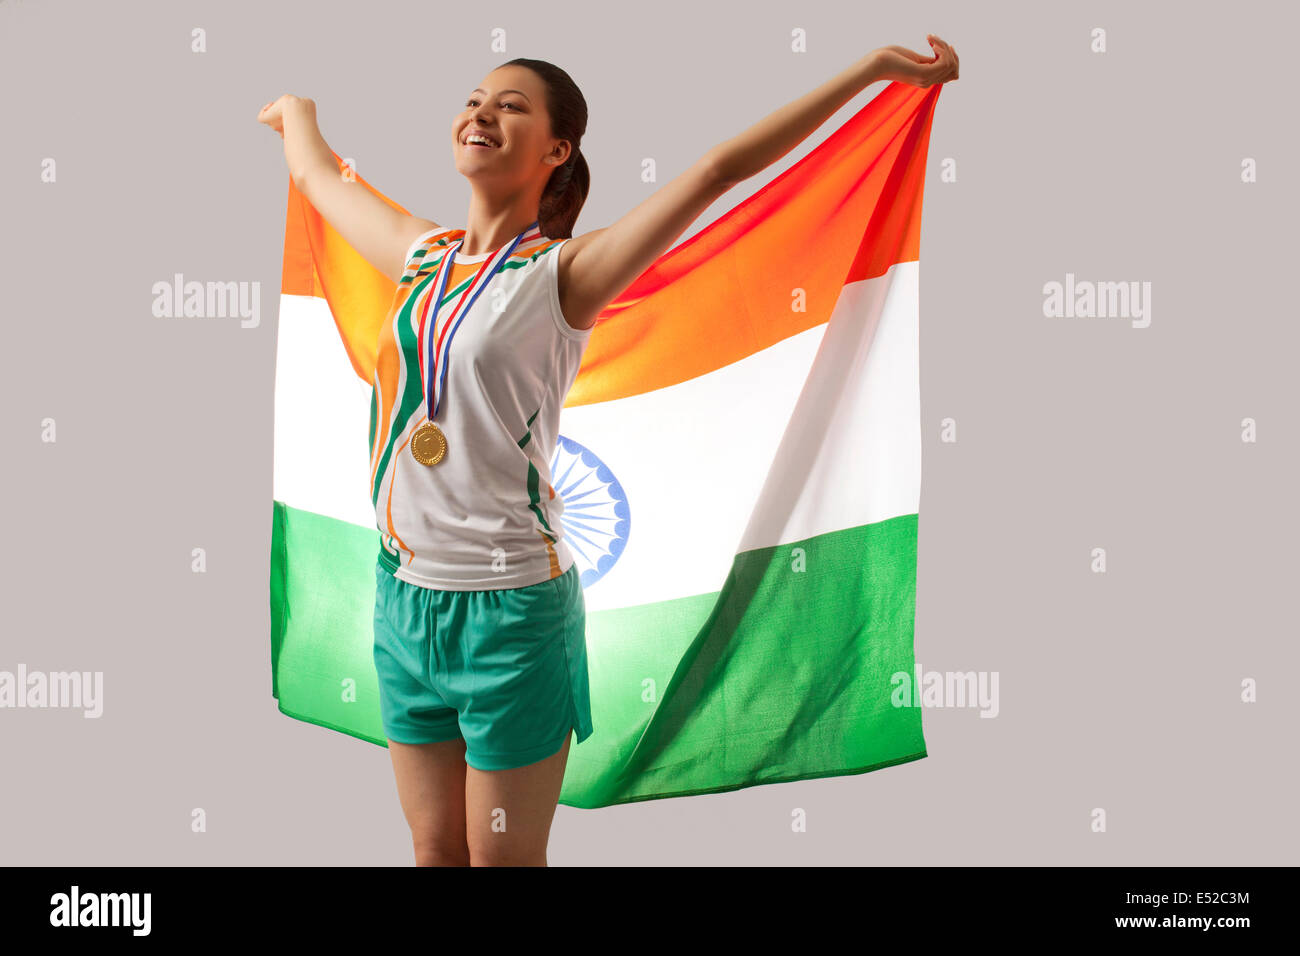 Célébrer la victoire avec le médaillé d femelle drapeau indien isolé sur fond gris Banque D'Images